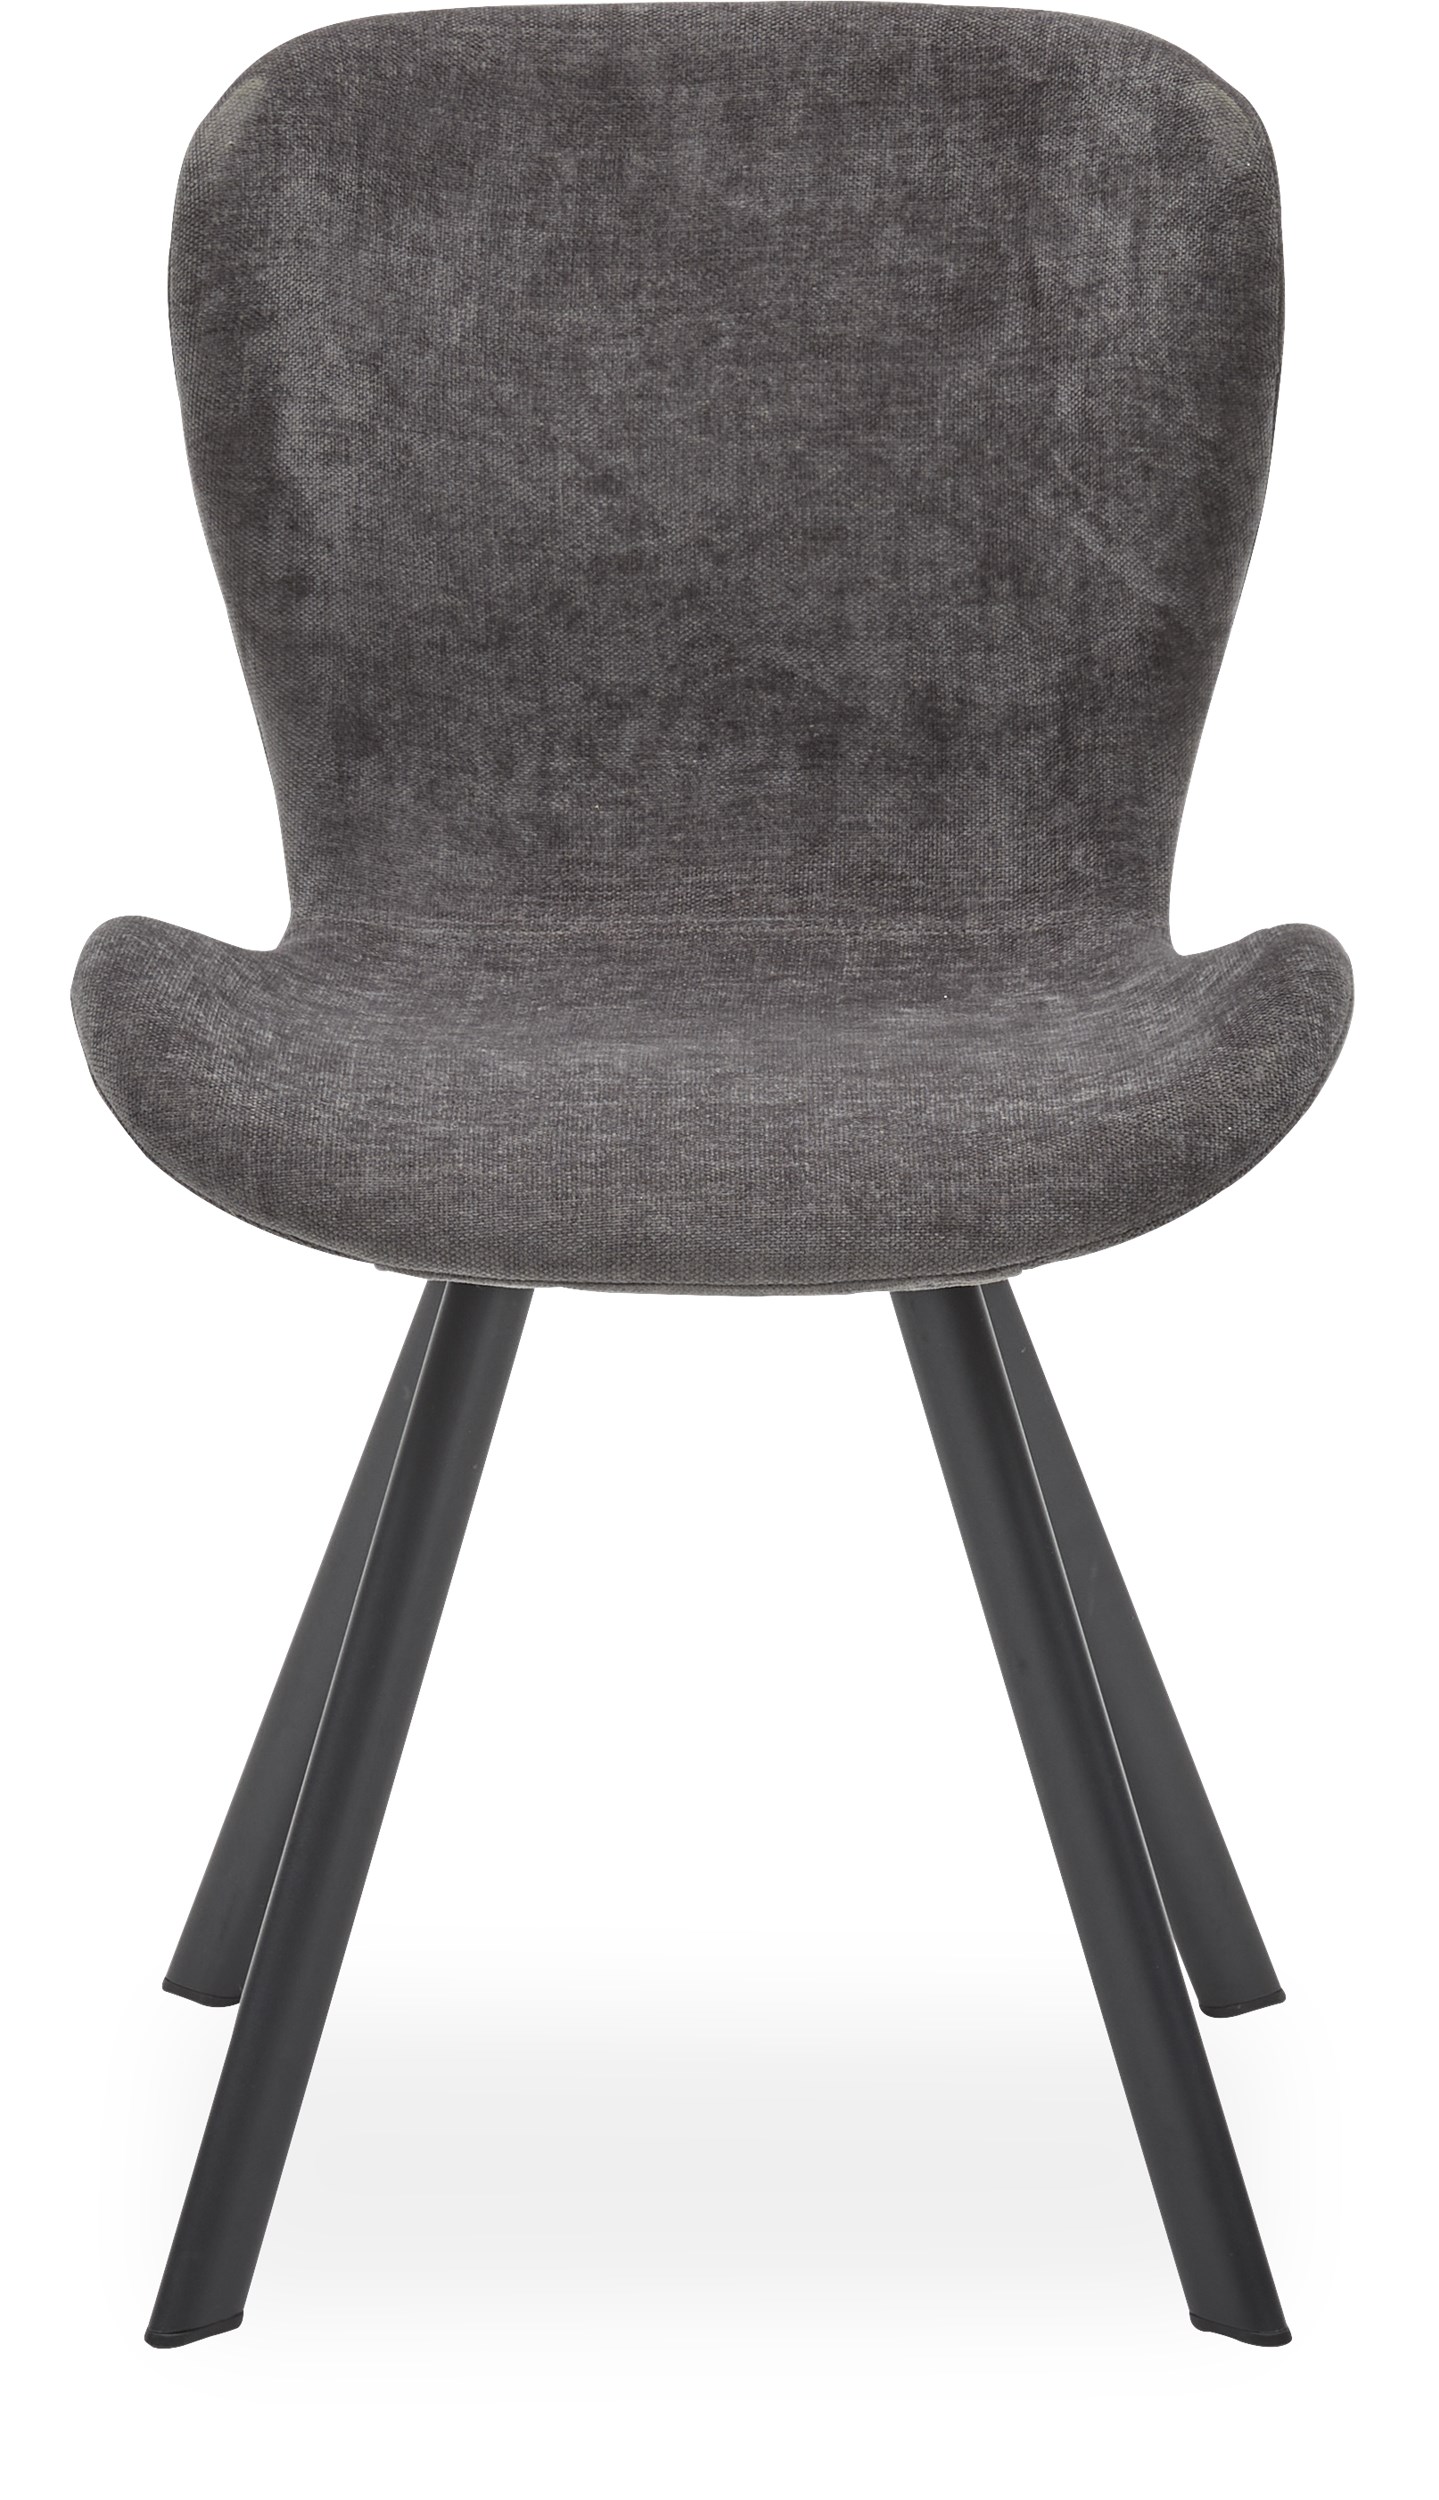 Ally Spisebordsstol - Sæde i mørkegråt stof og ben i sort pulverlakeret metal